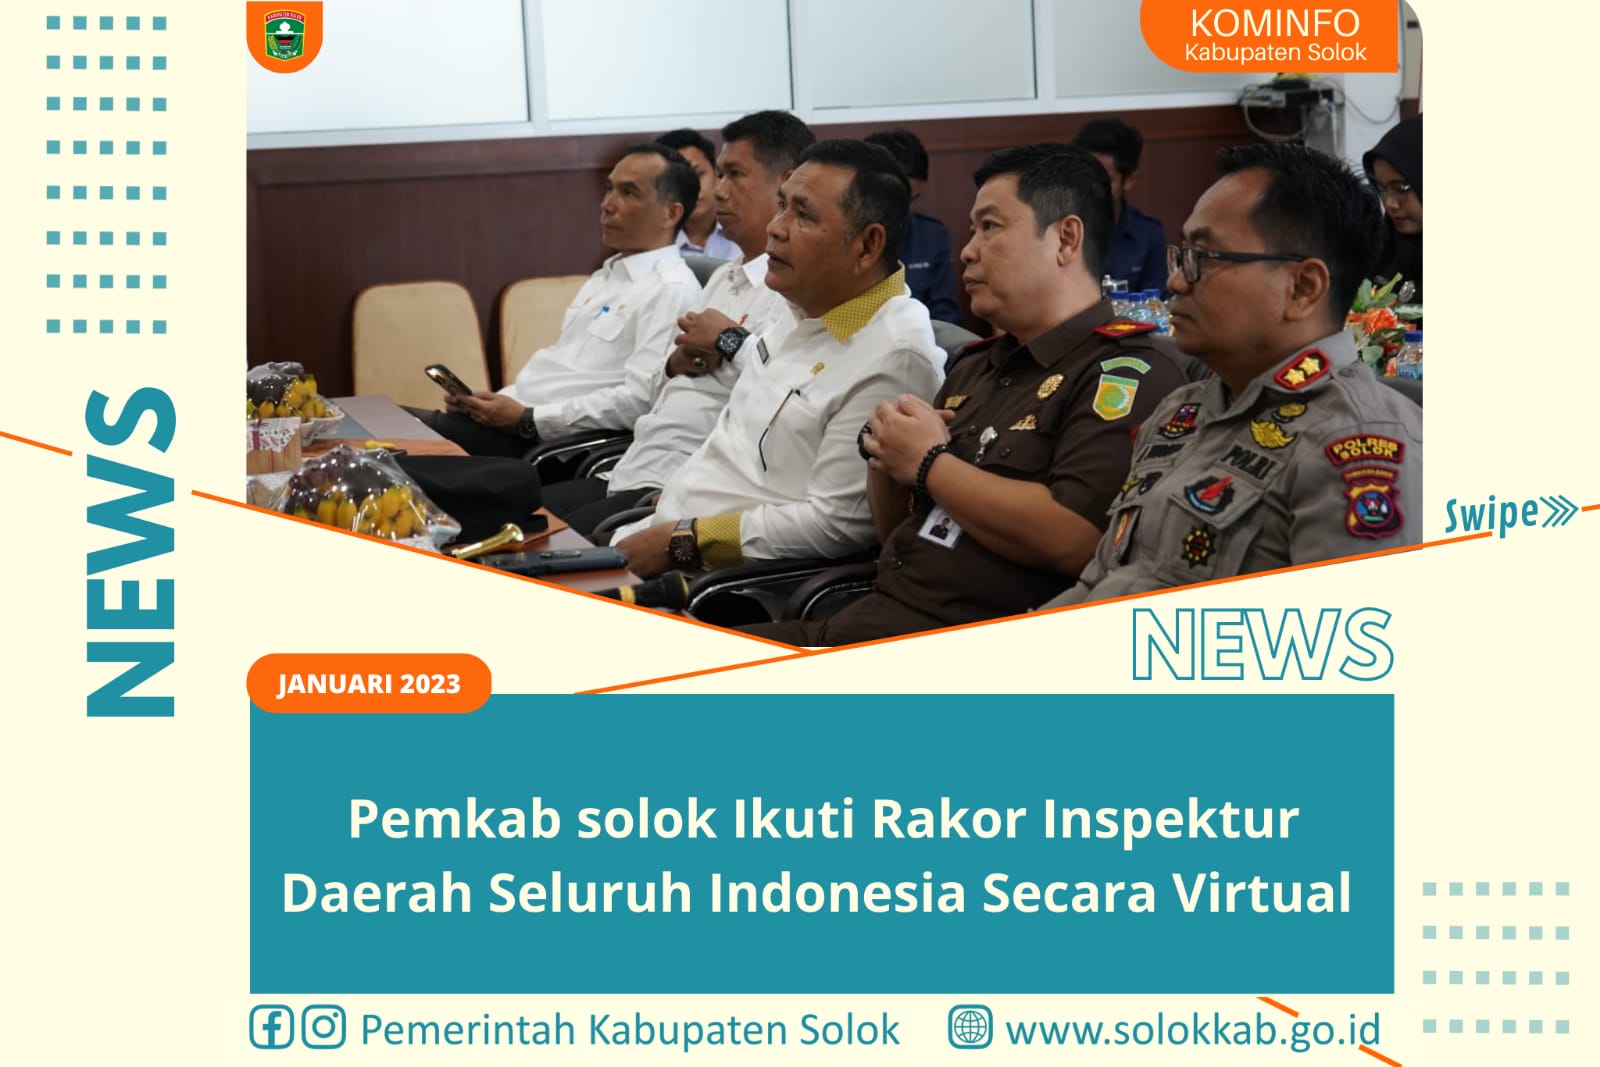 Pemkab Solok Ikuti Rakor Inspektur Daerah Seluruh Indonesia Secara Virtual